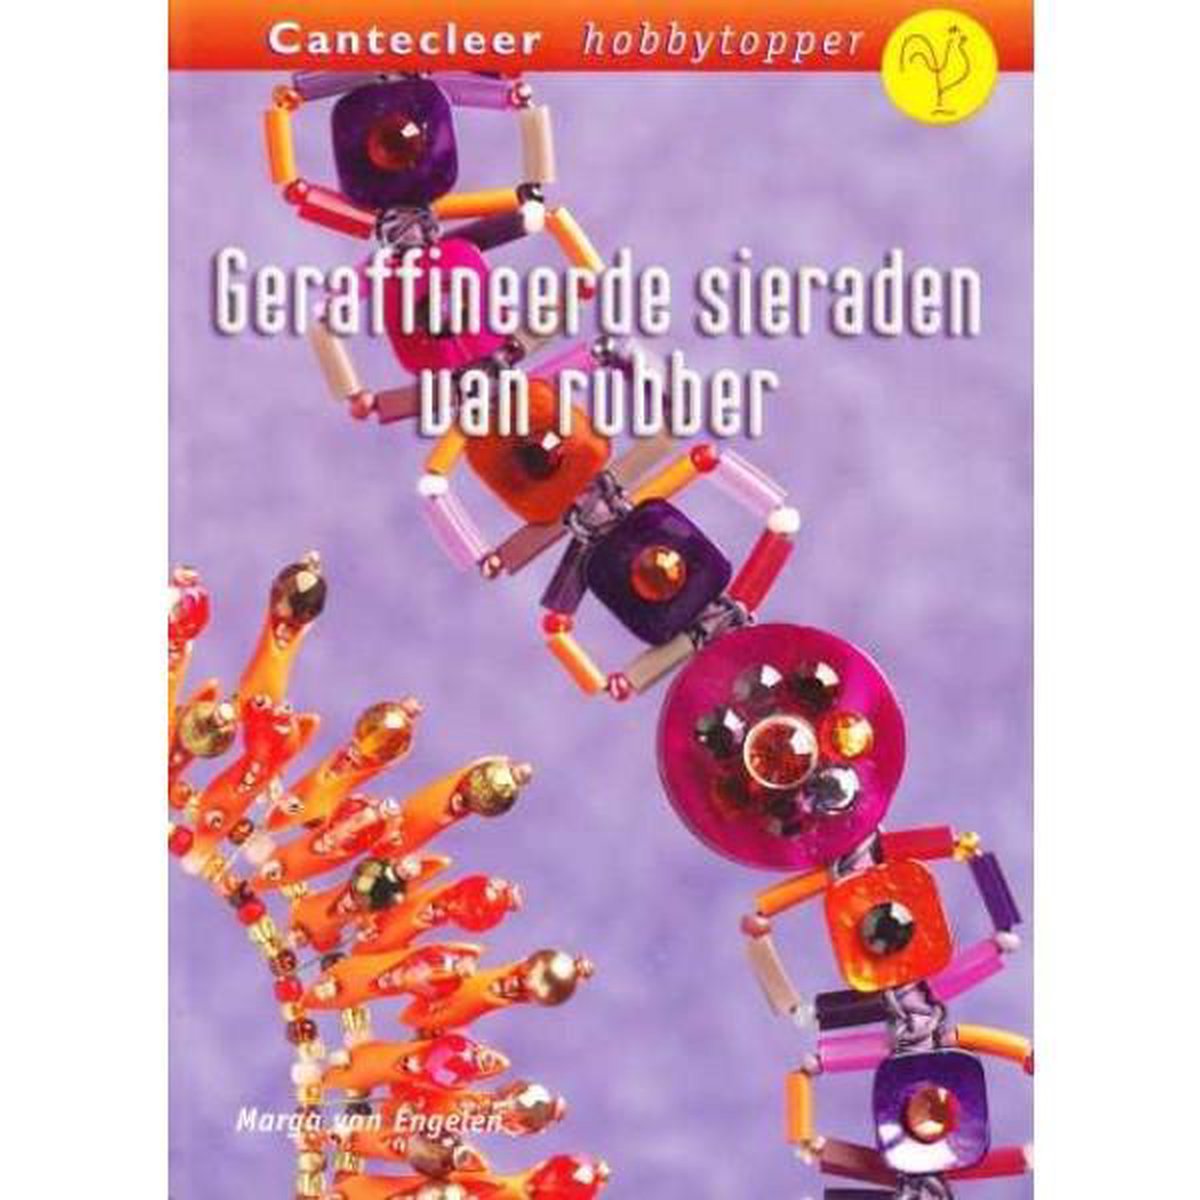 Rouwen nadering gracht Geraffineerde sieraden van rubber, Marga van Engelen | 9789021336923 |  Boeken | bol.com